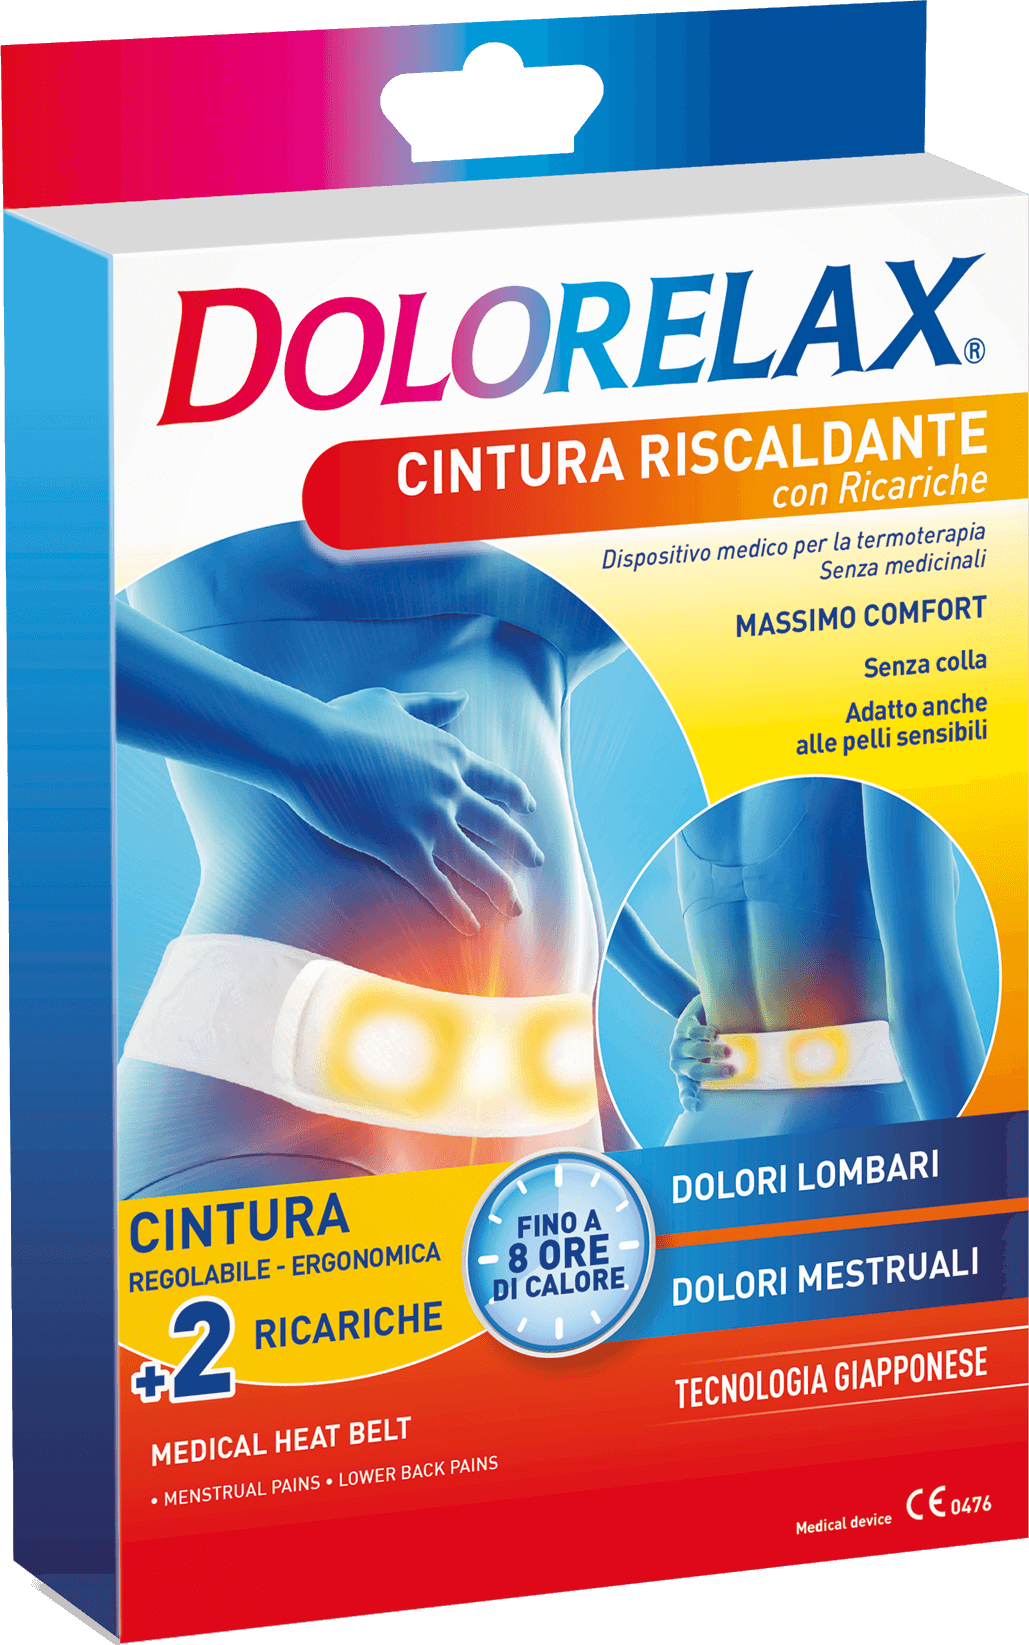 Dolorelax - La Cintura Riscaldante con Ricariche è dispositivo